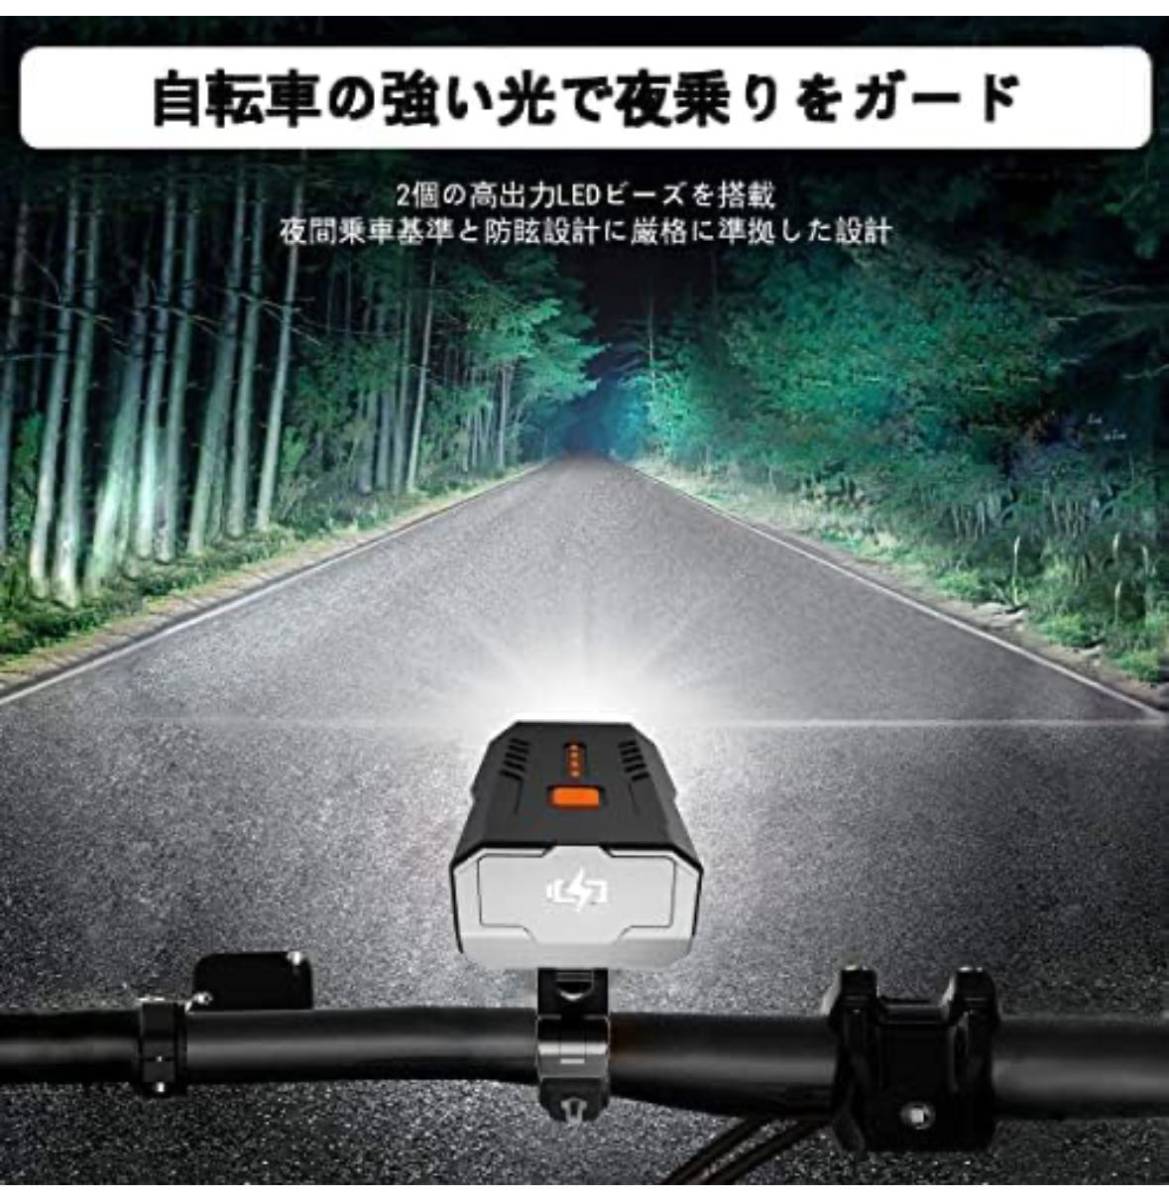 Cemoy 自転車 ライト LED 3000mAh大容量 1200ルーメン LEDヘッドライト USB充電式 PSE認証済 防水 高輝度IP65防水 ロングライドの画像2